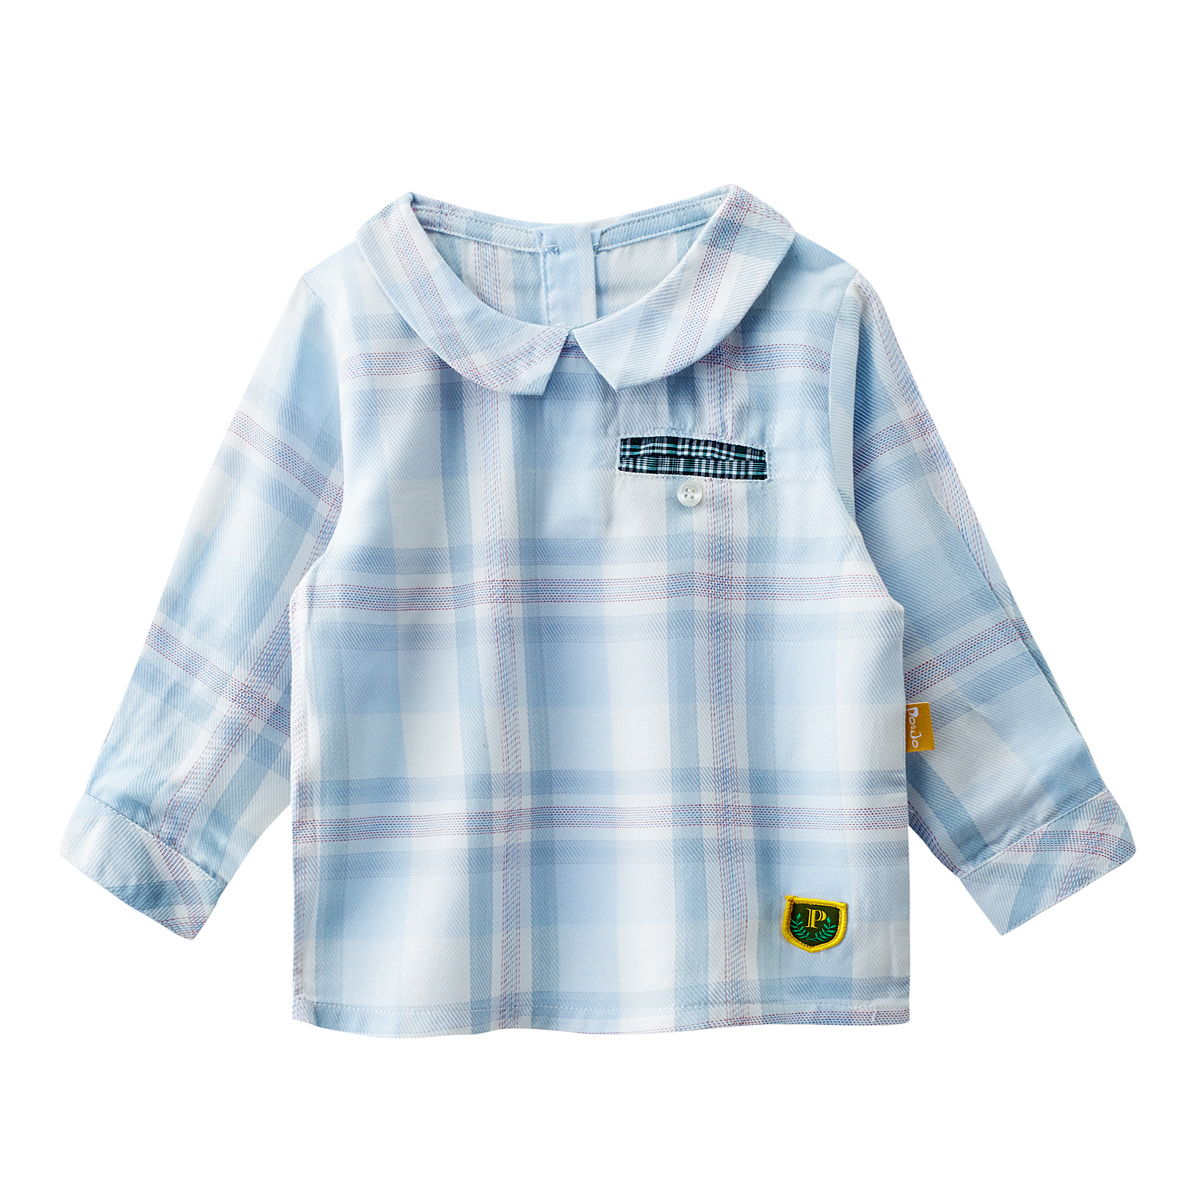 皮偌乔品牌童装女童长袖T恤宝宝婴儿衣服装纯棉夏季2015新款